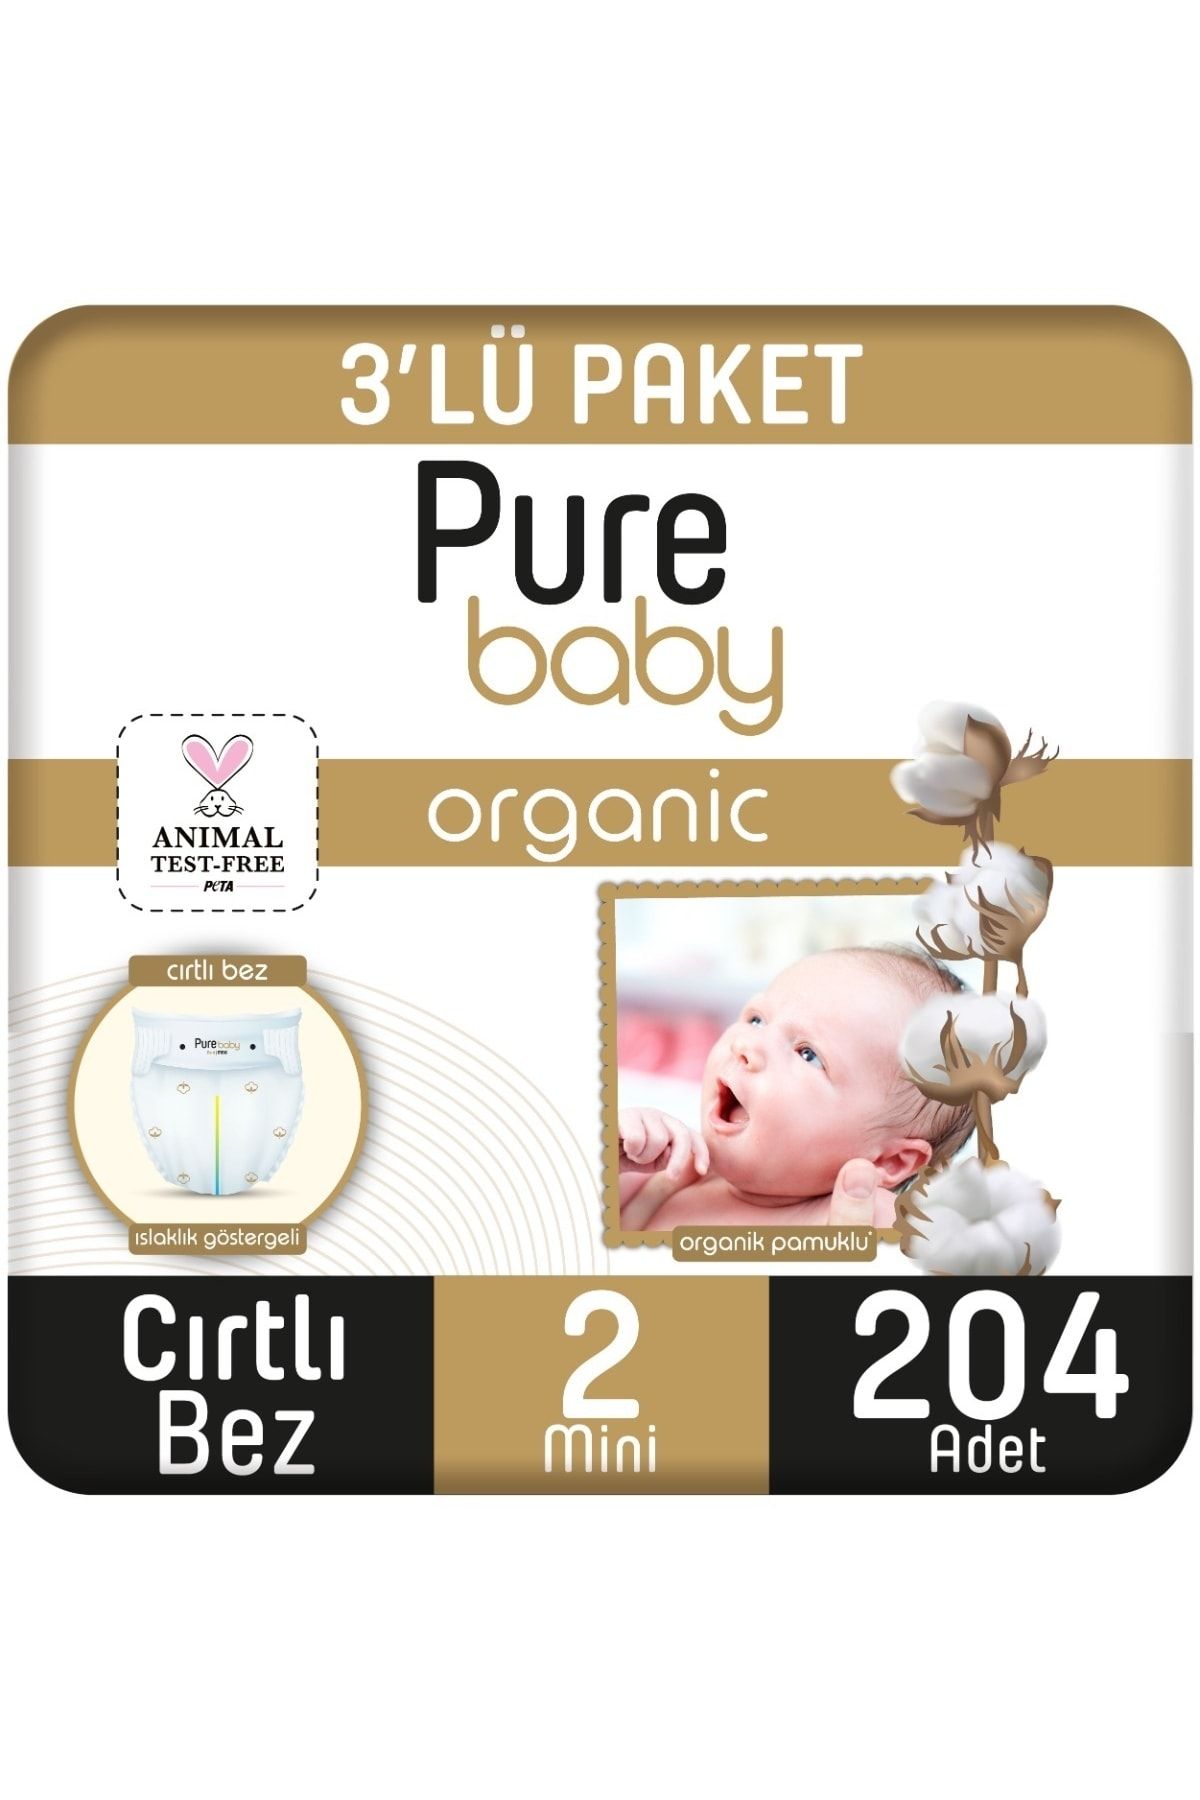 Pure Baby Organik Pamuklu Cırtlı Bez 3'lü Paket 2 Numara Mini 204 Adet